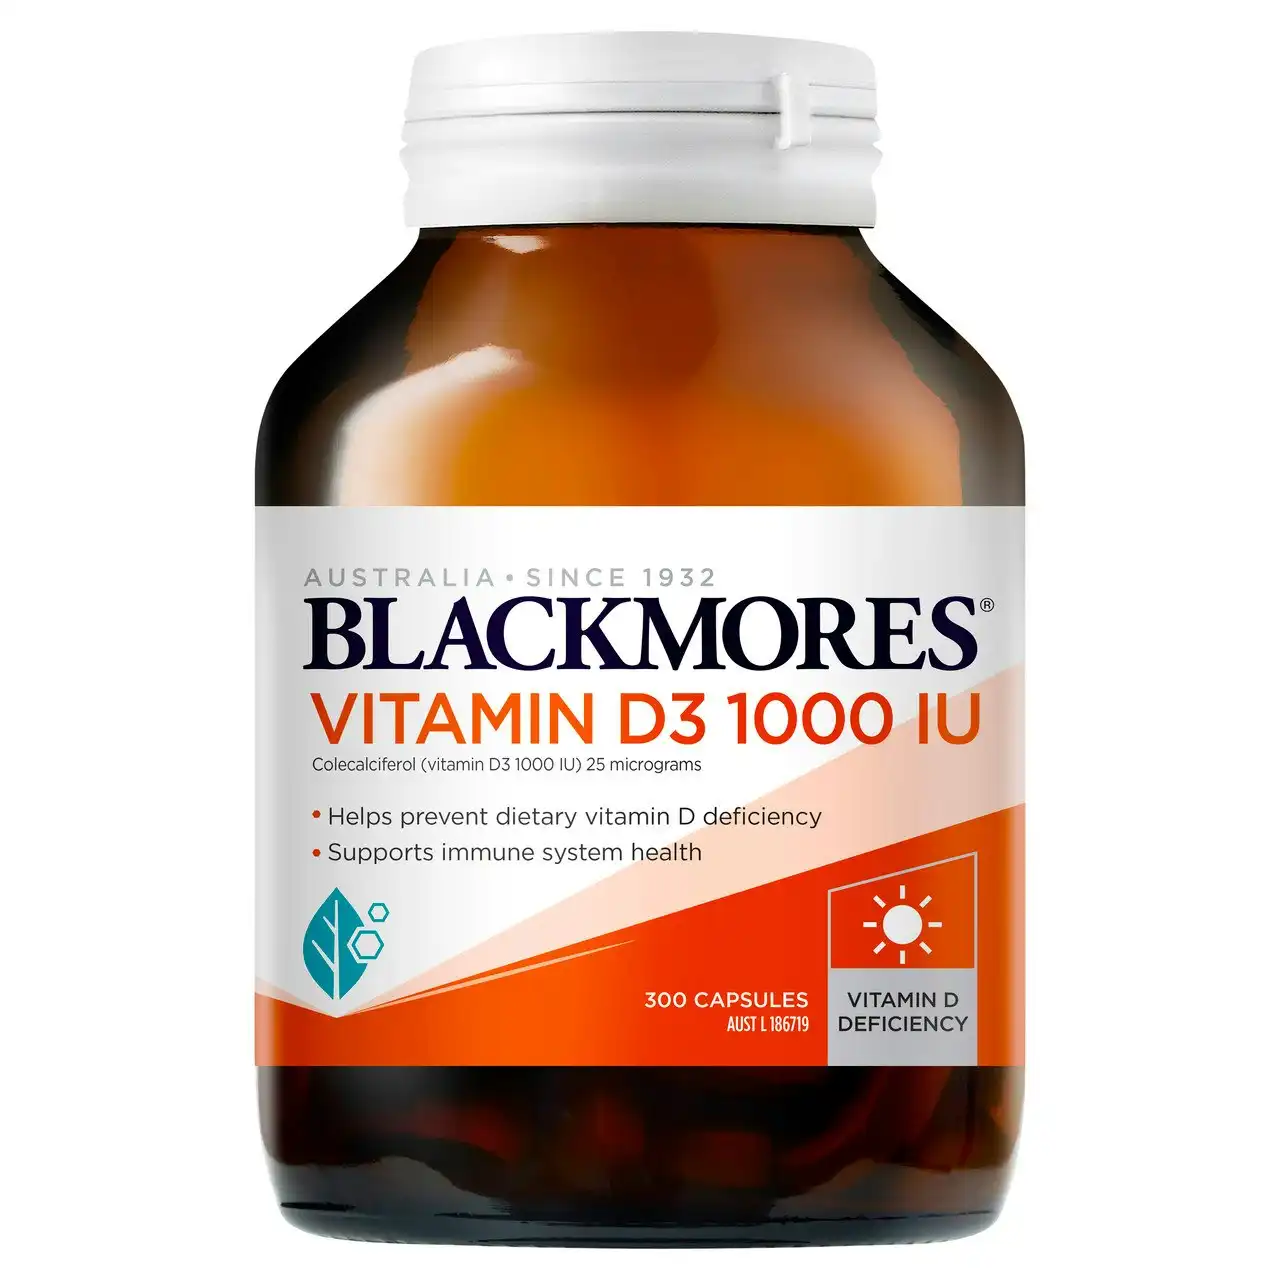 Blackmores Vitamin D3 1000 IU 300 Soft Capsules